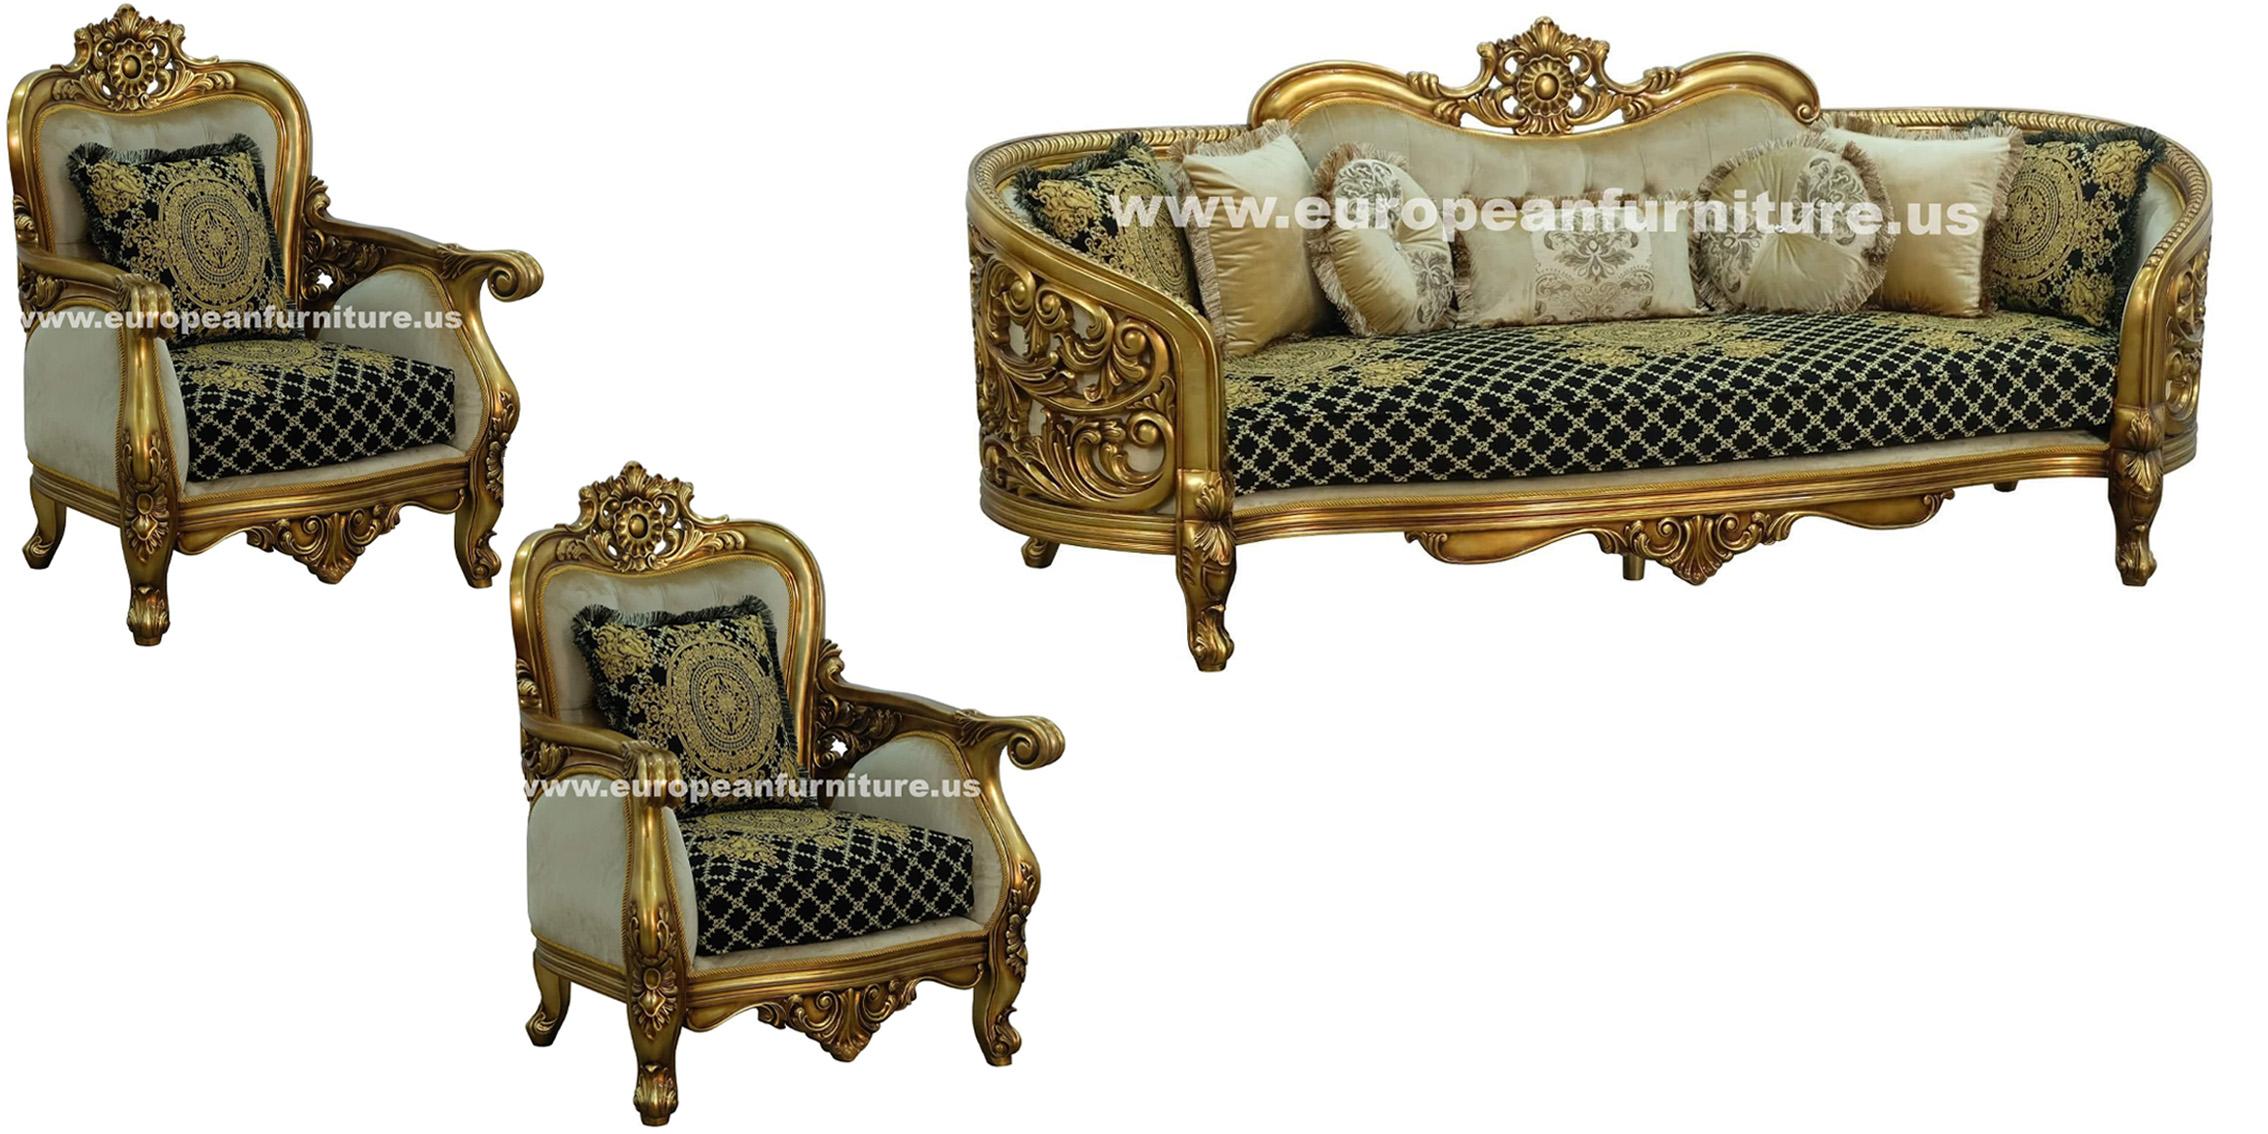 

    
30018-C Classic Antique Bronze Black-Gold Fabric 30018 BELLAGIO Armchair EUROPEAN FURNITURE
